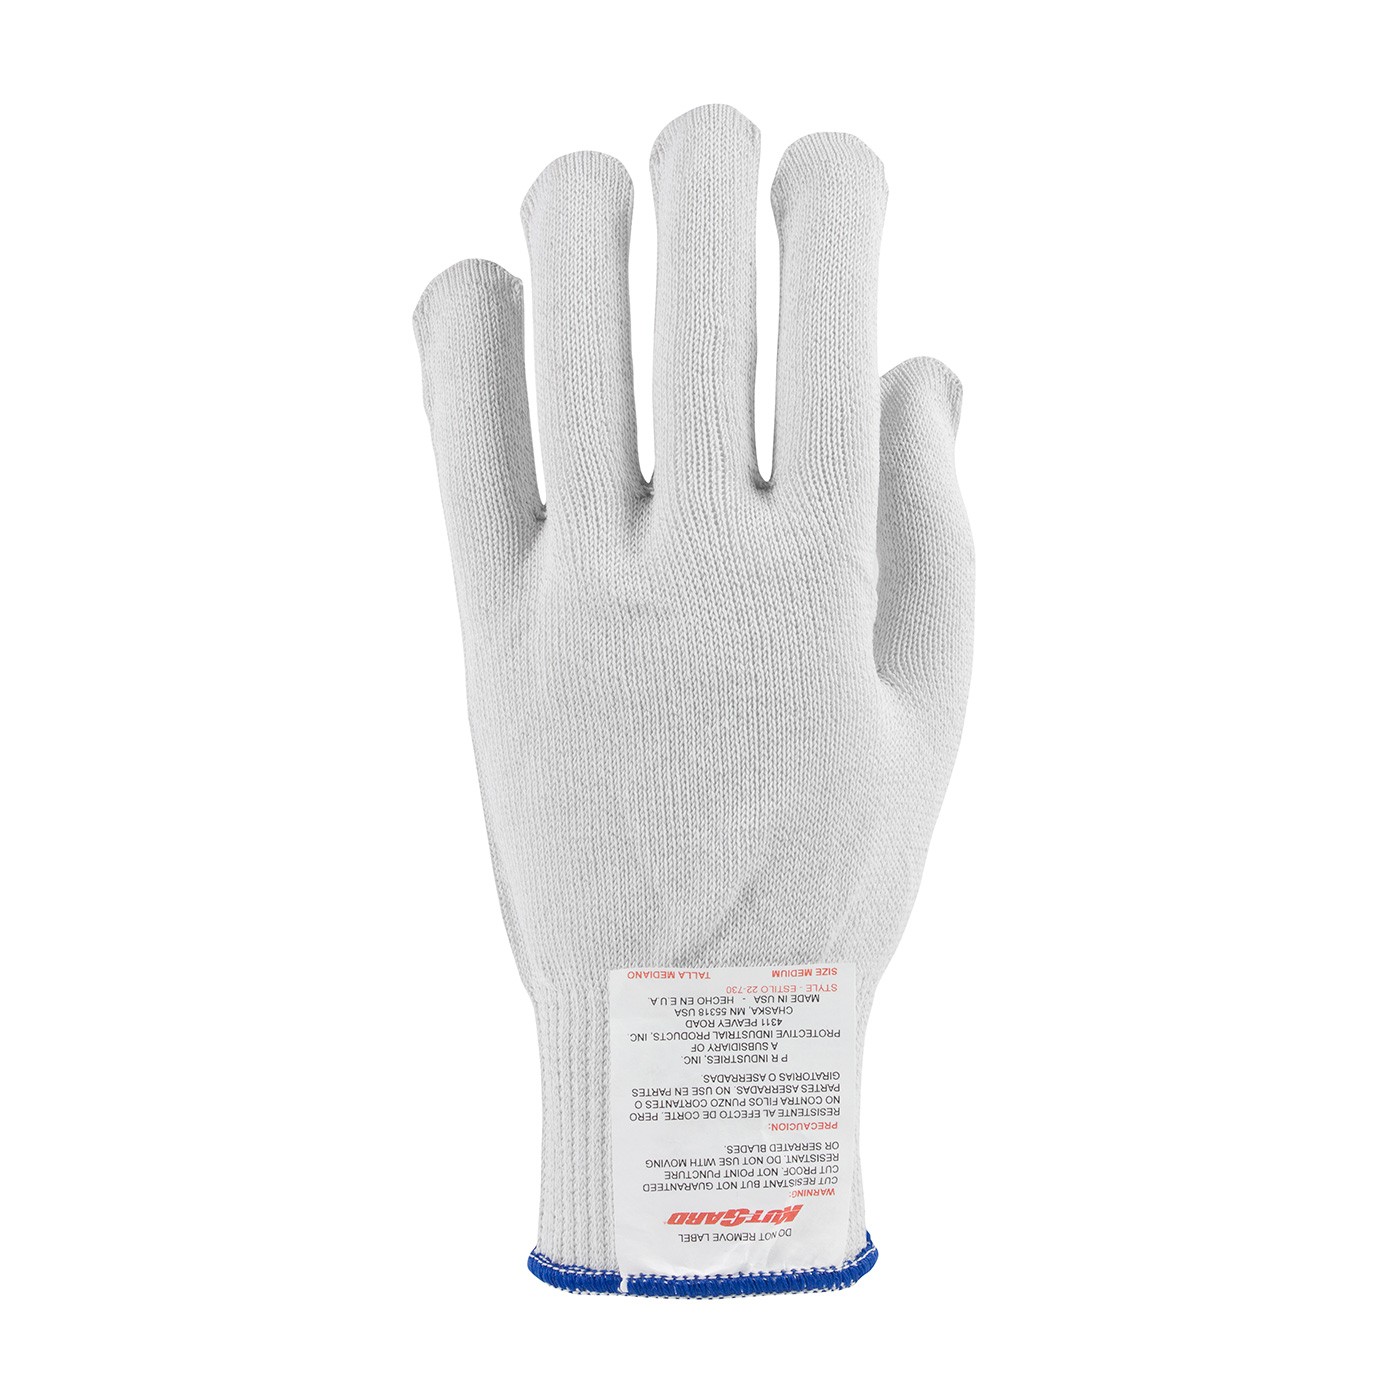 Kut Gard® Seamless Knit PolyKor® Blended Glove - Light Weight  (#22-730)